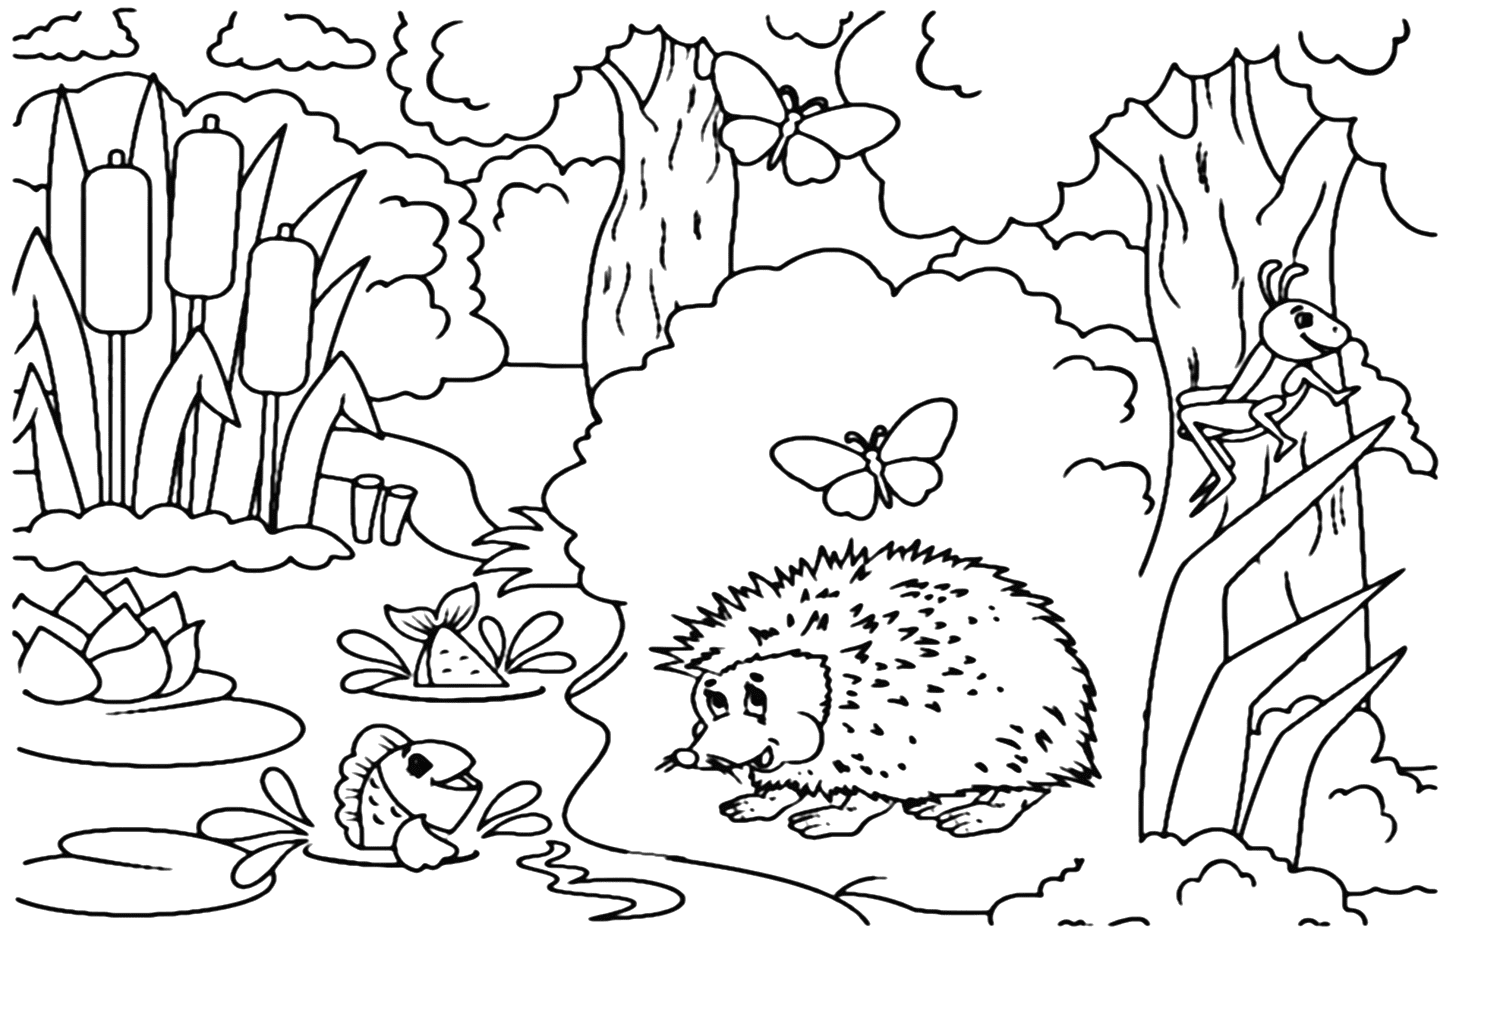 Раскраска Дикобраз для дошкольника из мультфильма Porcupine